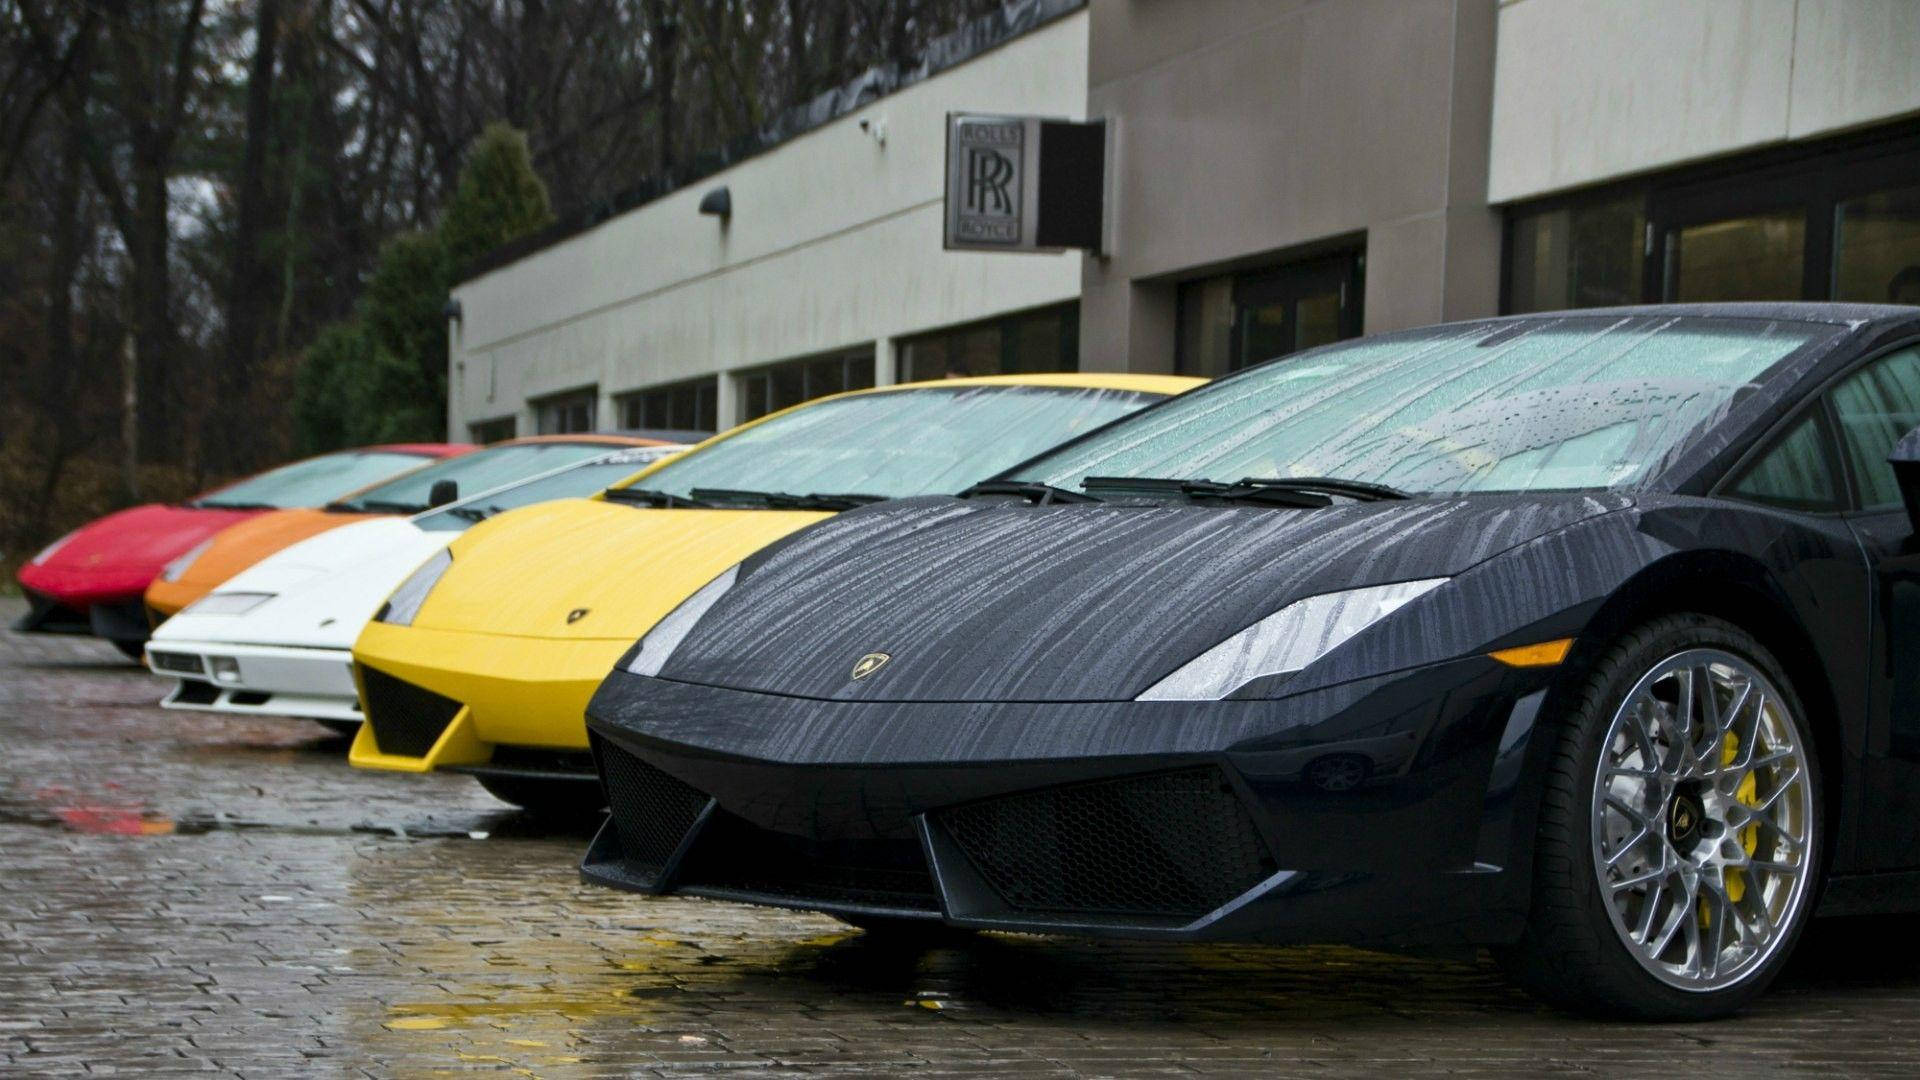 Lamborghiniscoloridos En Alta Definición (full Hd) Para Fondos De Pantalla De Computadoras O Móviles. Fondo de pantalla